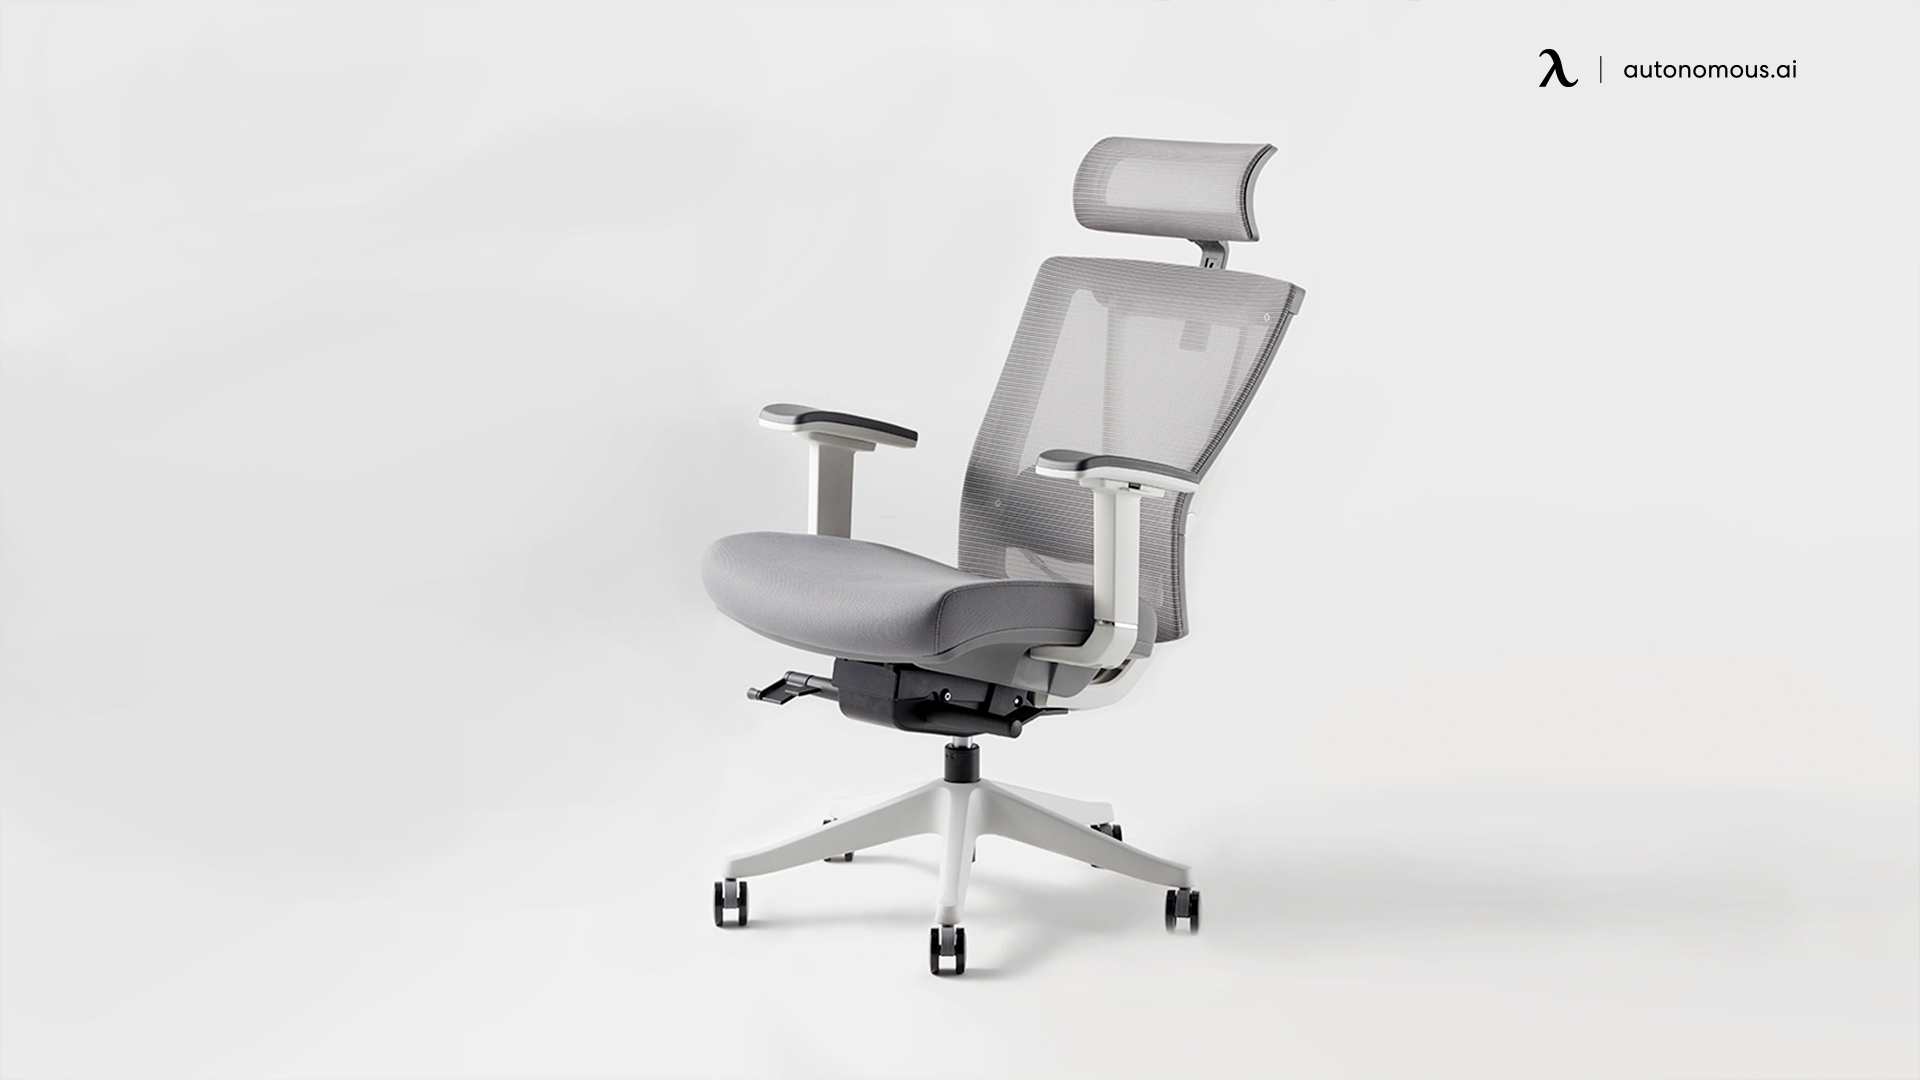 Ergonomic White Office Chairs white desk accessories